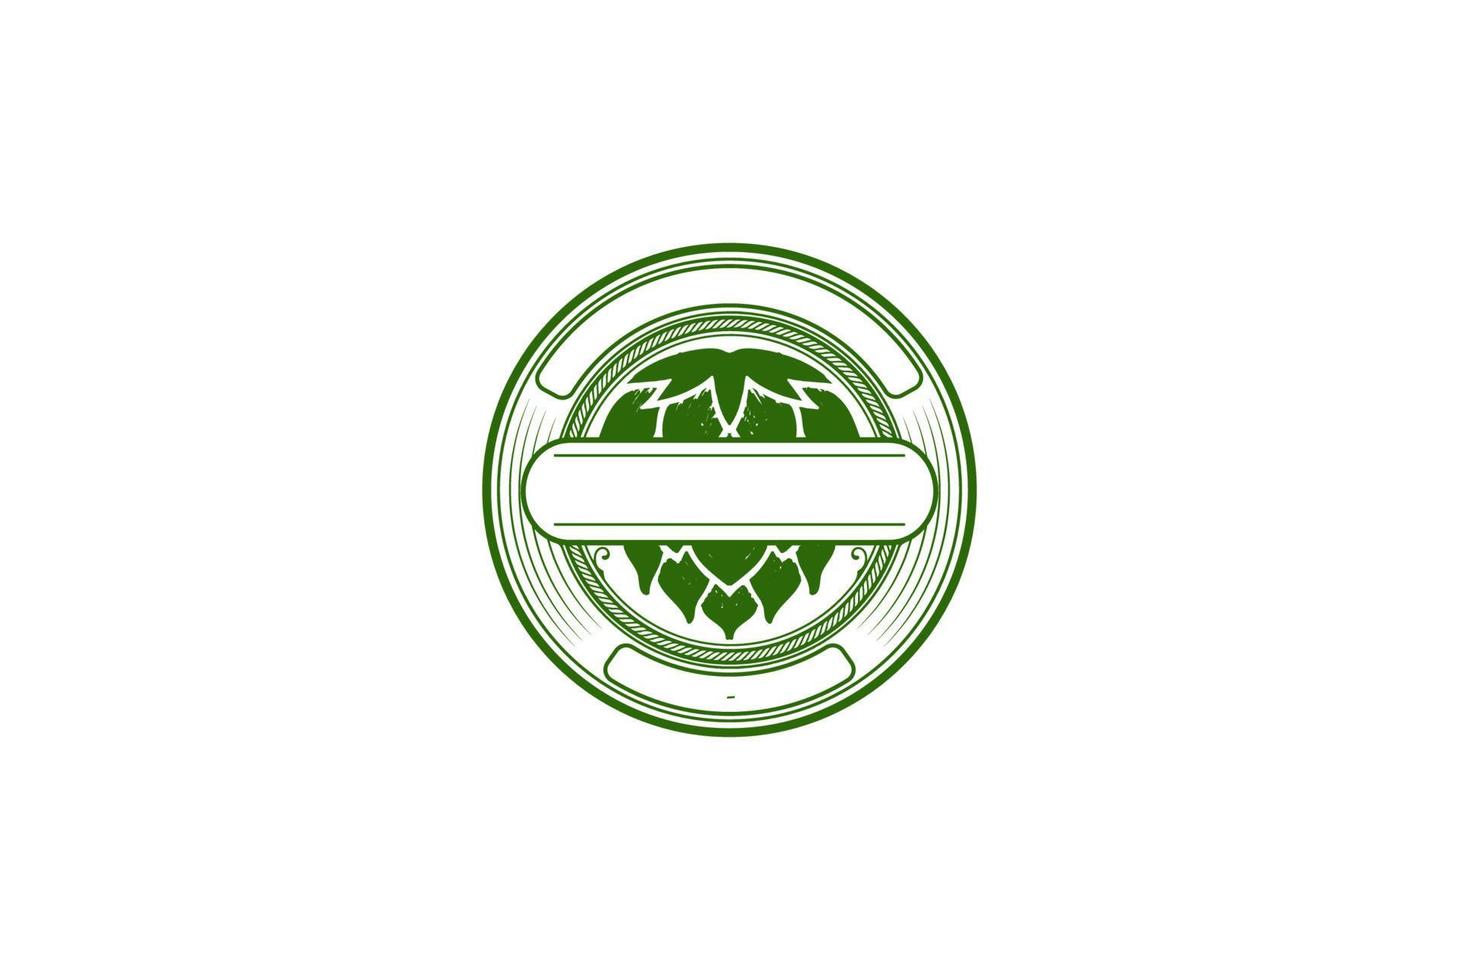 kreisförmiger runder alter grüner Vintage-Hopfen für Craft Beer, Brauen oder Brauerei-Label-Logo-Design-Vektor vektor